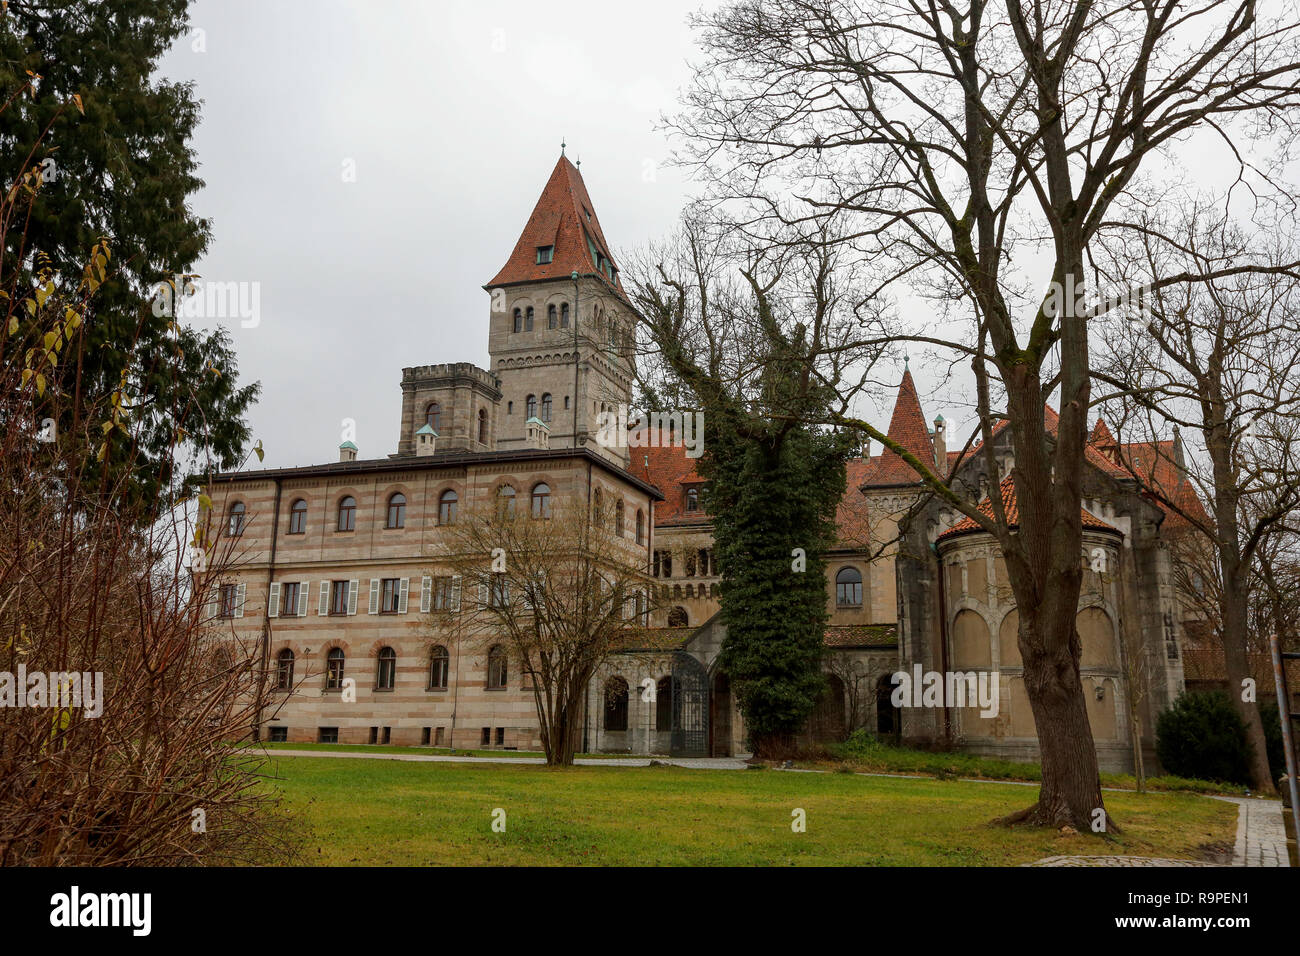 Das Schloss Stein von Faber-Castell Schreibwaren Unternehmen in Nürnberg.  Bayern, Deutschland Stockfotografie - Alamy